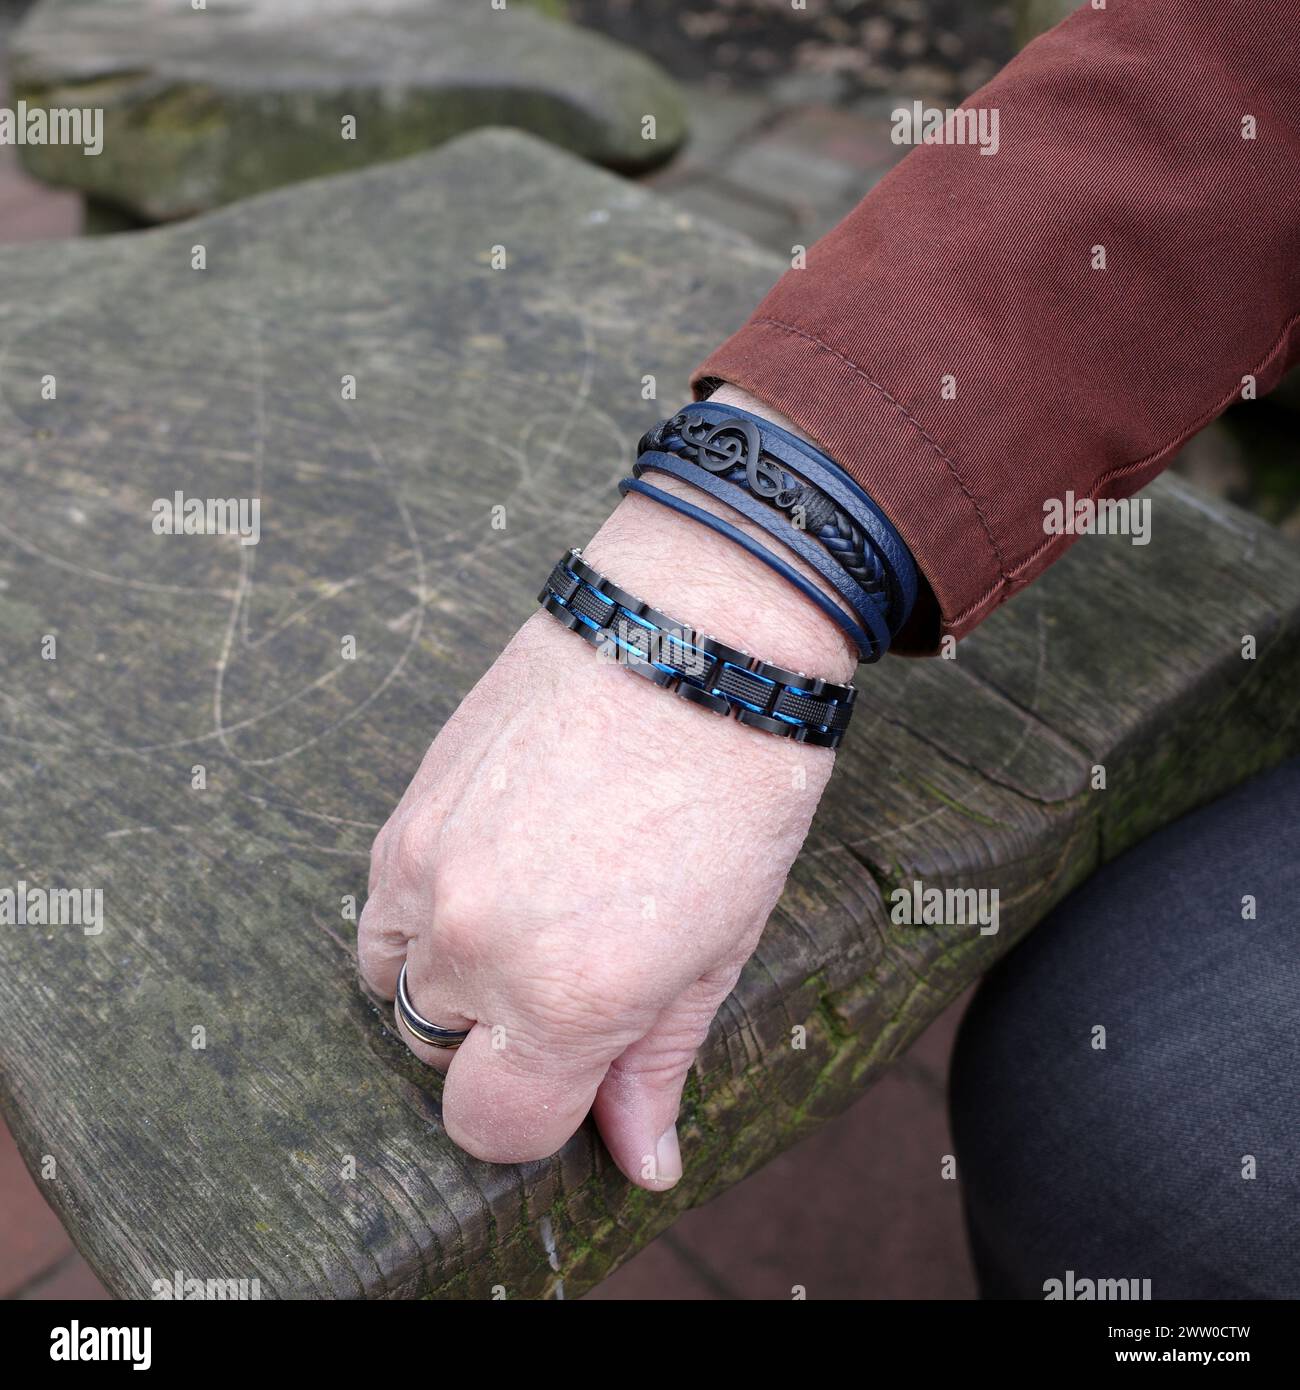 La main d'un musicien à la mode avec des bracelets noirs. Un bracelet contient une clef musicale. Banque D'Images